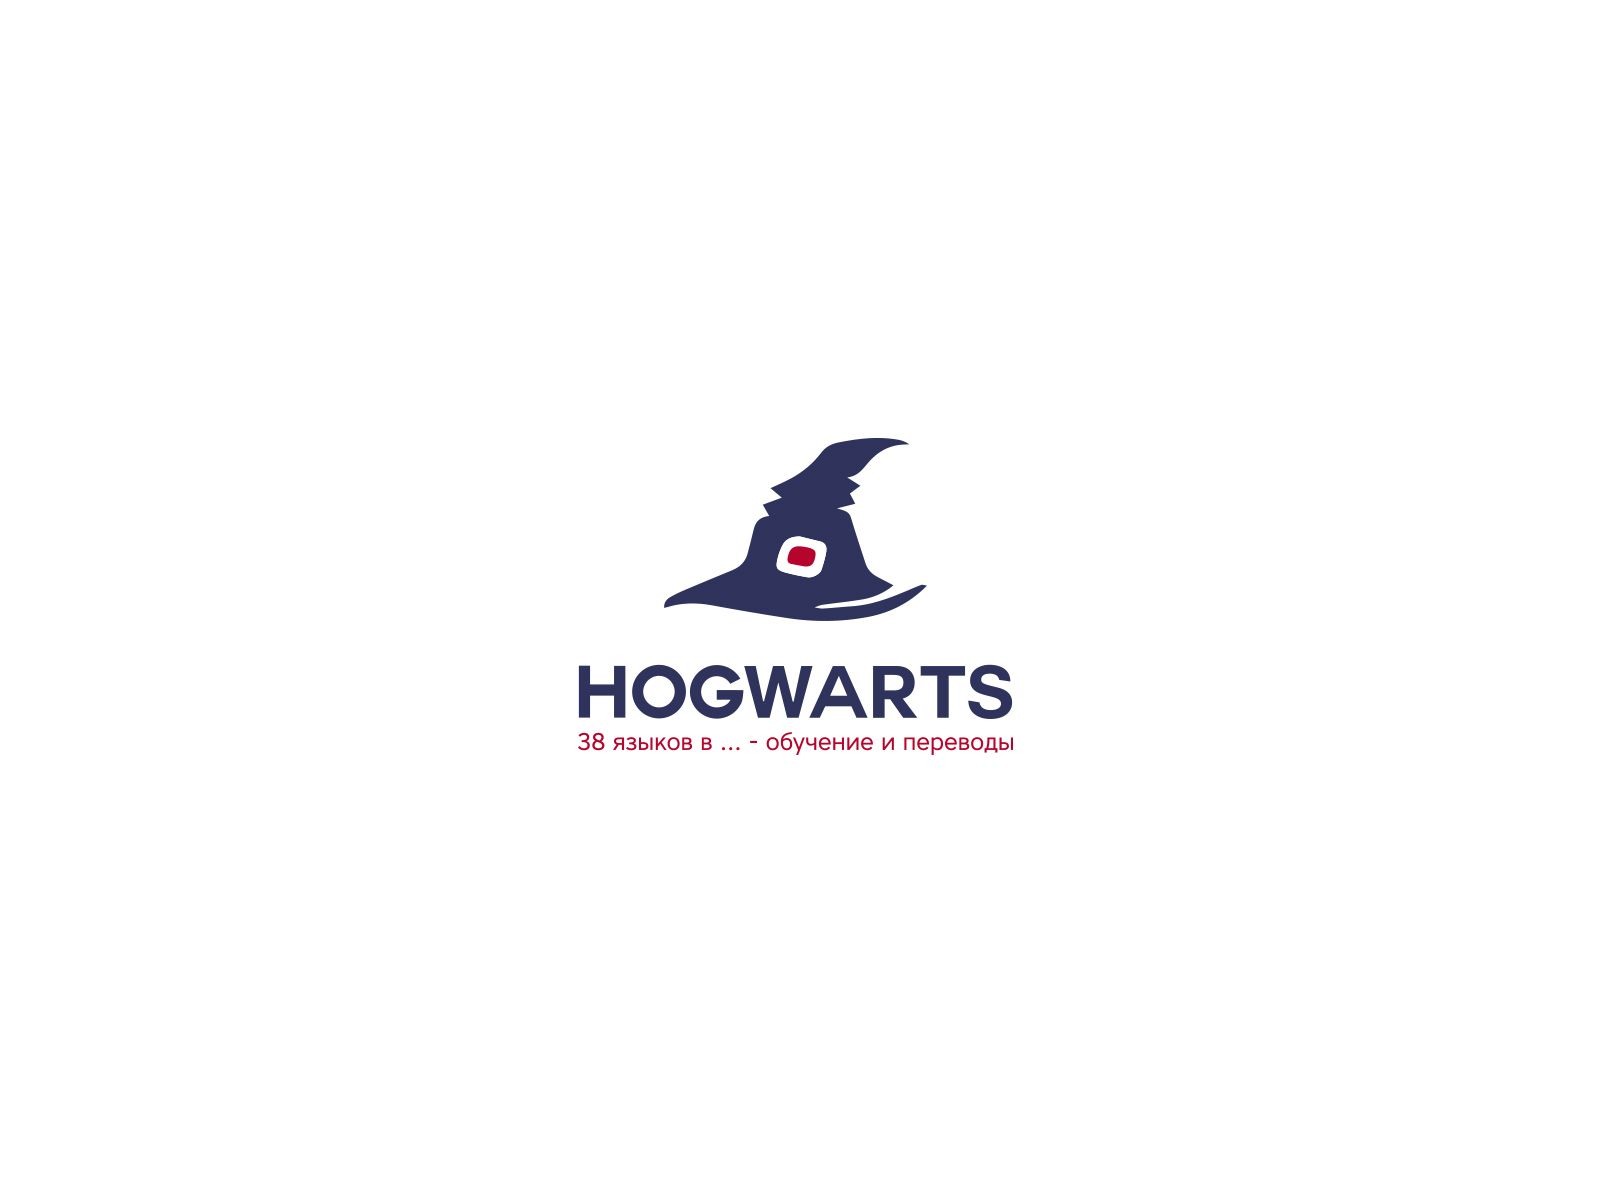 Лого для сети языковых школ HOGWARTS (38 языков) - дизайнер U4po4mak